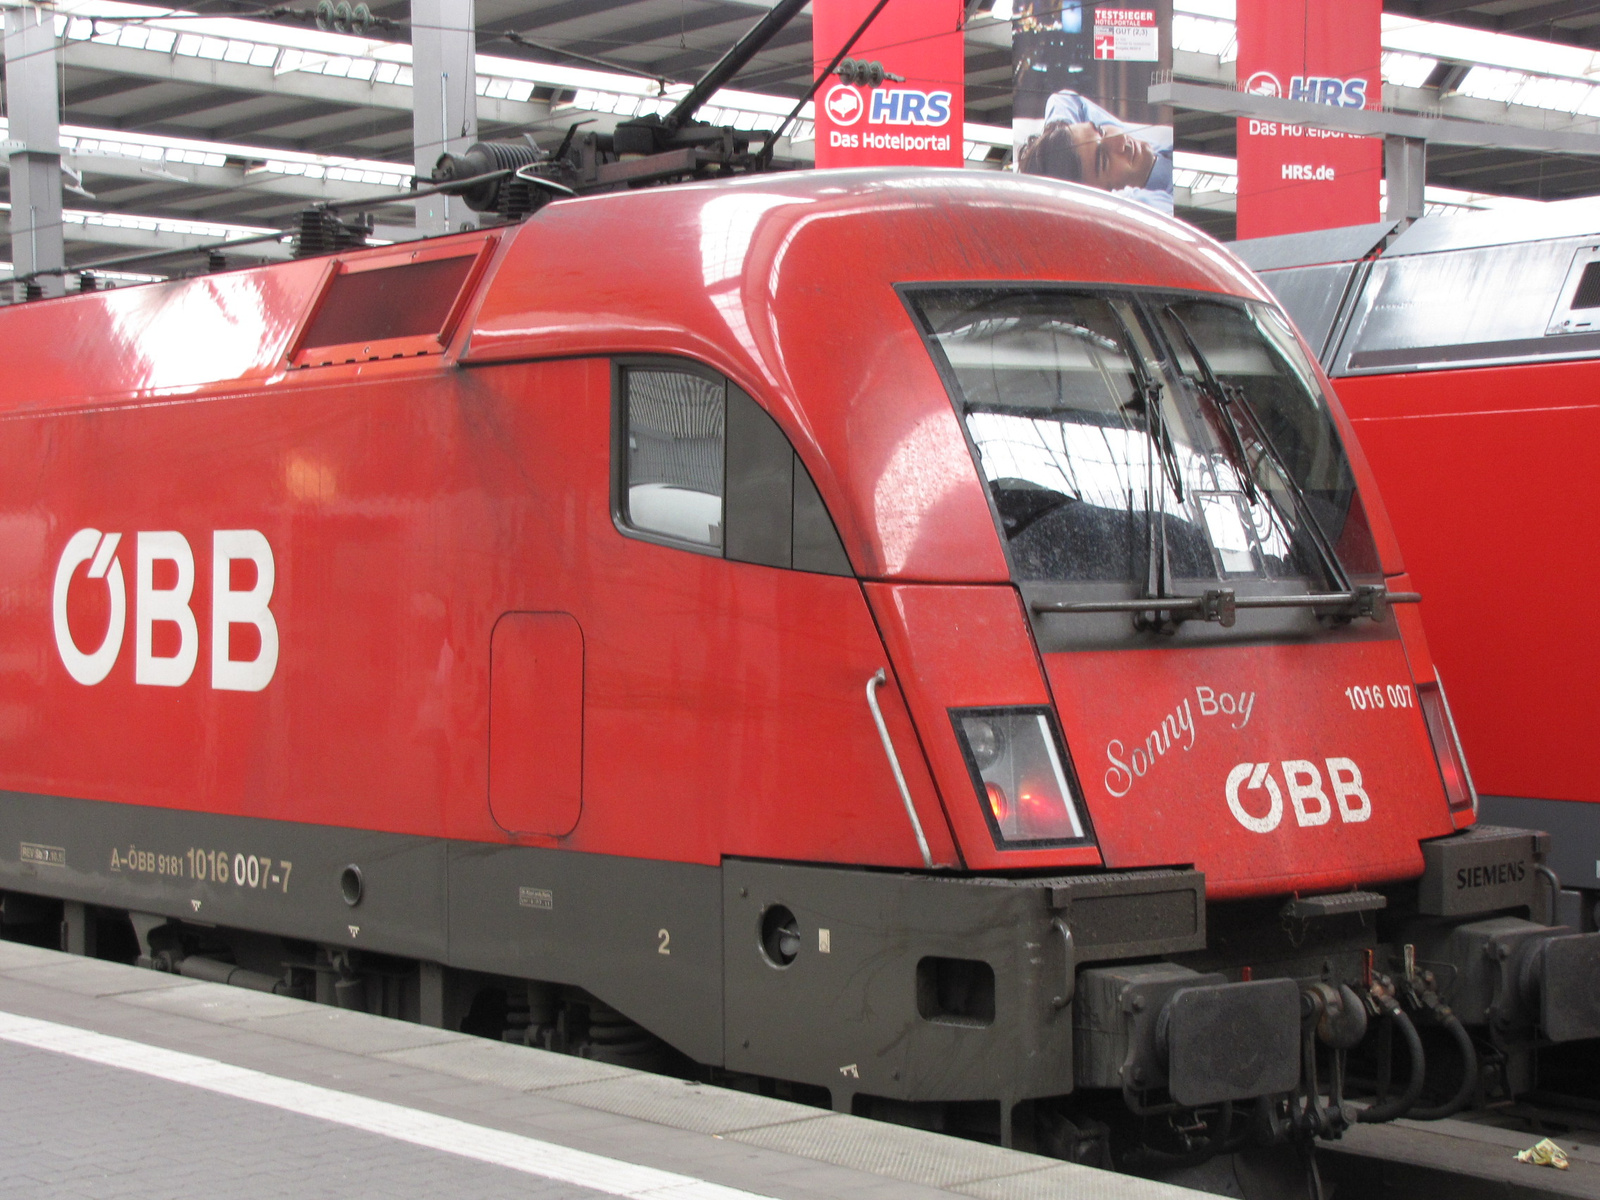 A-ÖBB 9181 1016 007-7 (München, Hauptbahnhof), SzG3